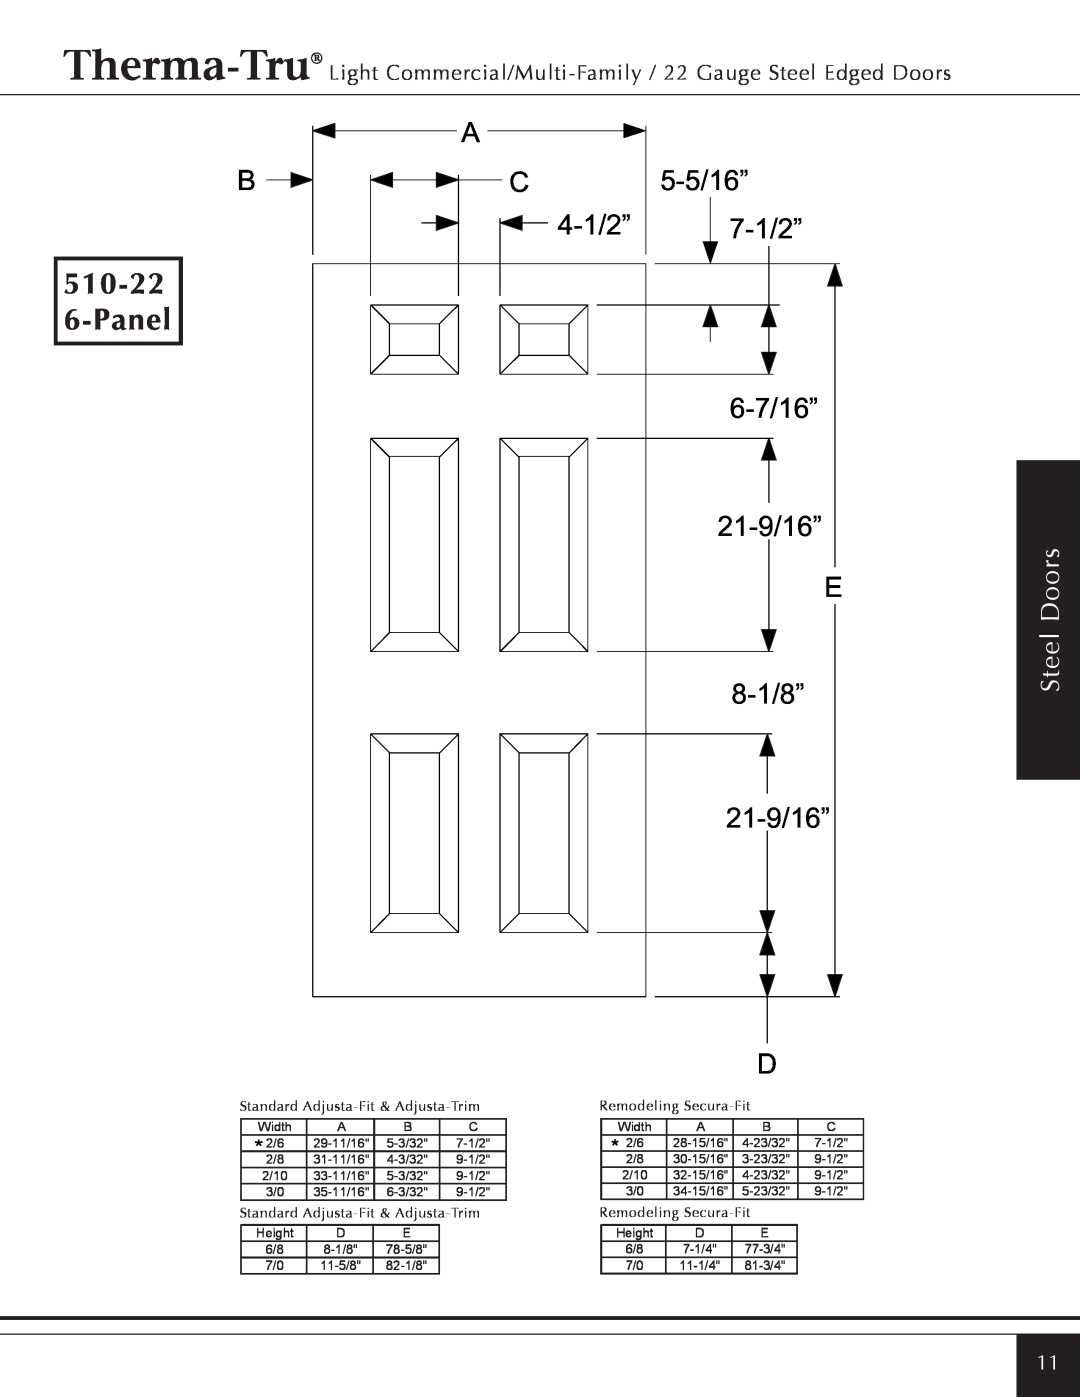 Therma-Tru Light Commercial/Multi-Family / 22 & 24 Gauge Steel Edged Door 510-22 6-Panel, 8-1/8”, 21-9/16”, Steel Doors 